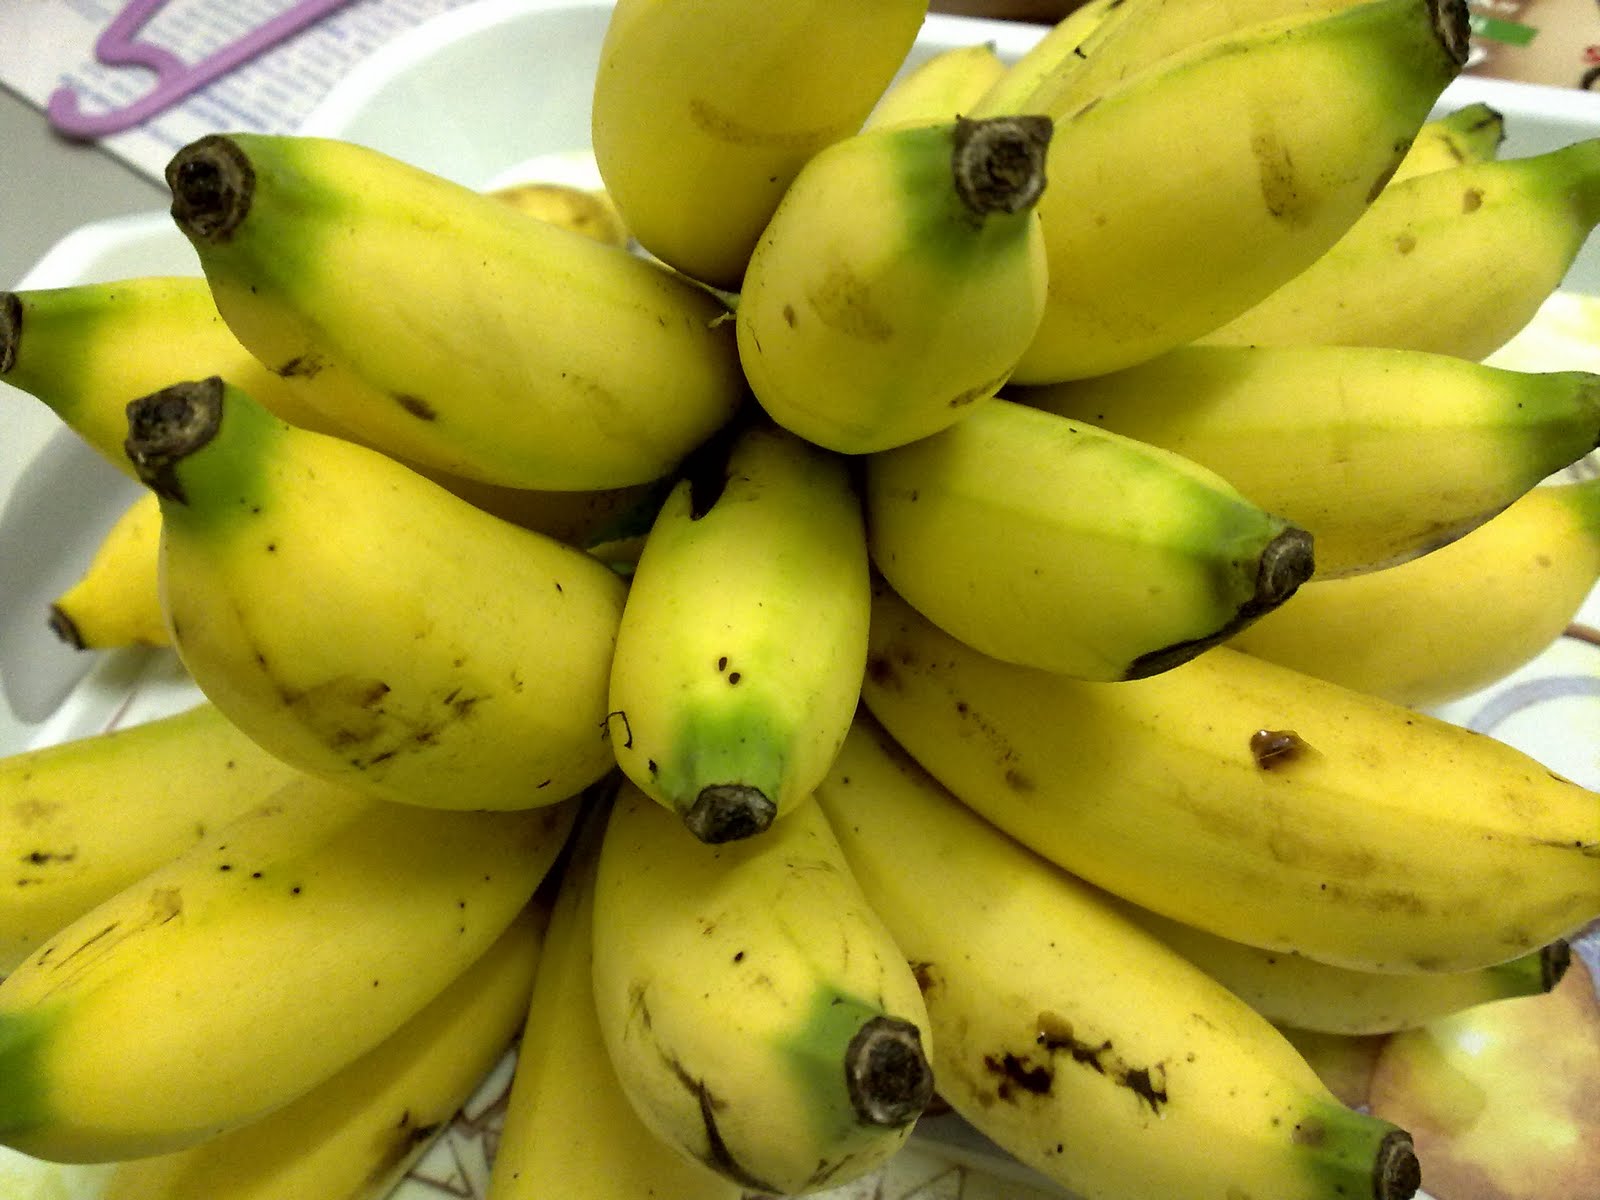 Manfaat dan Khasiat Buah Pisang untuk Kesehatan | Health Benefits of Fruits